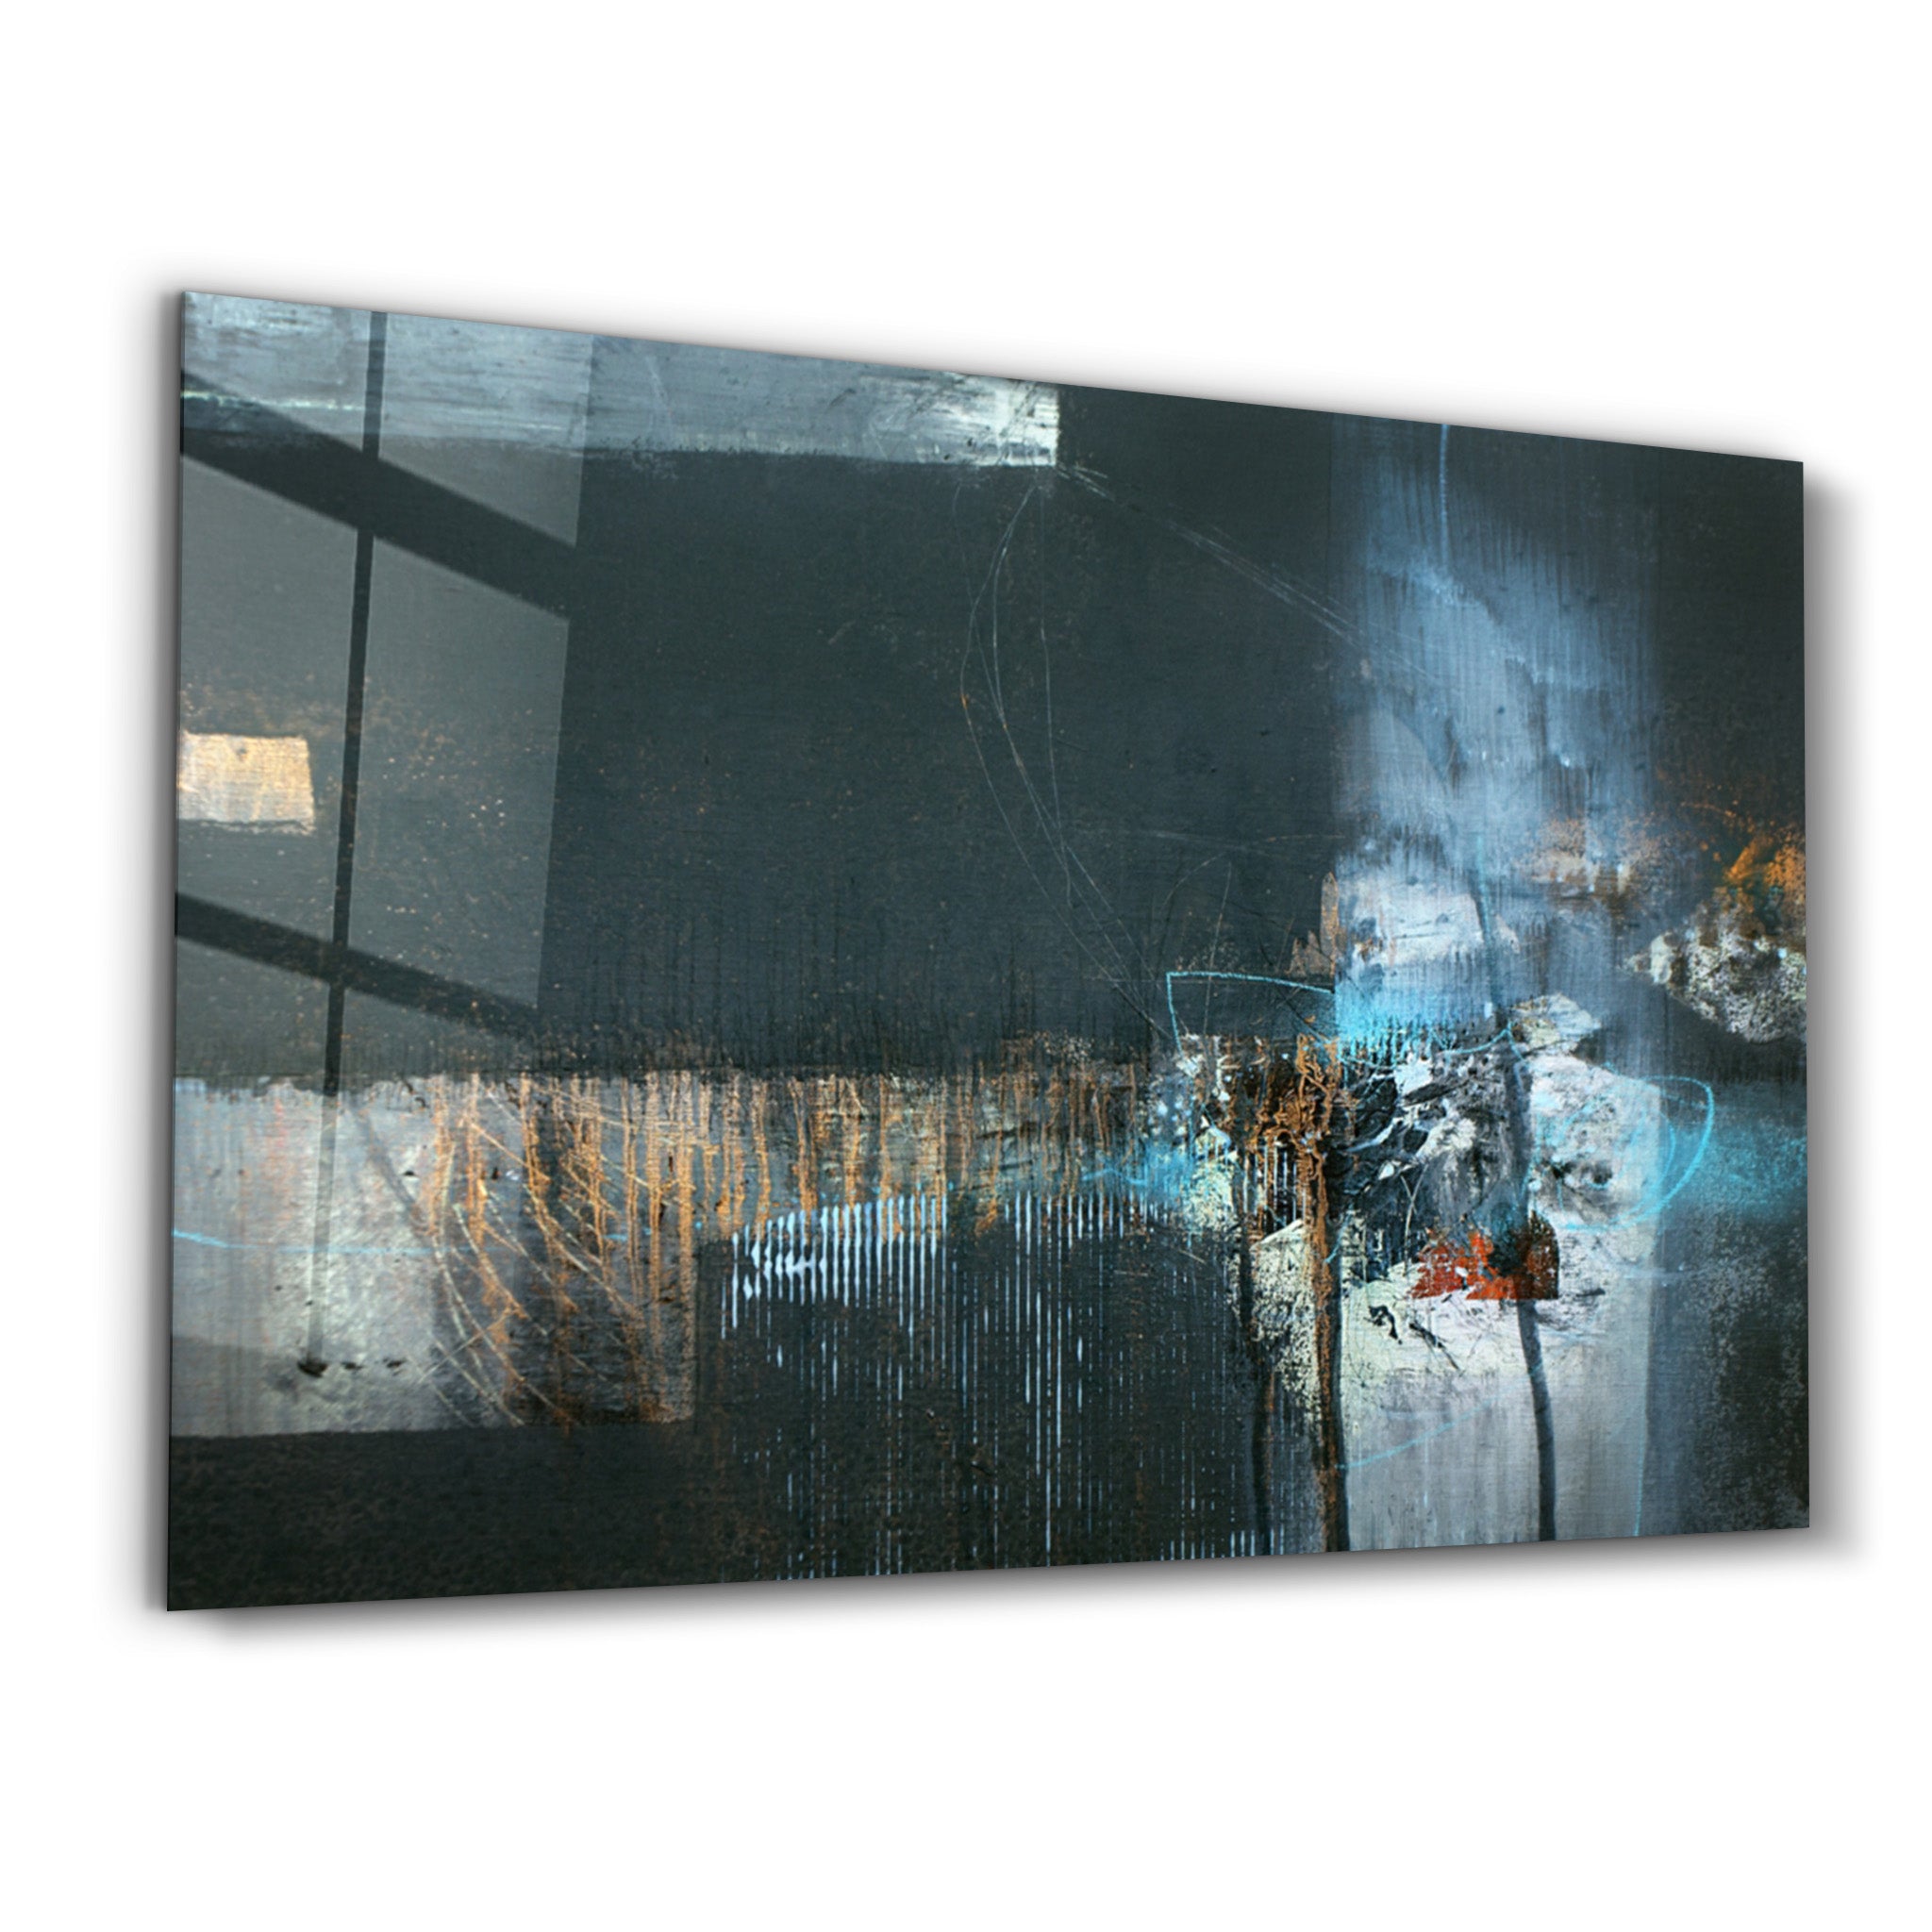 ・"The Real Abstract"・Glass Wall Art - ArtDesigna Glass Printing Wall Art